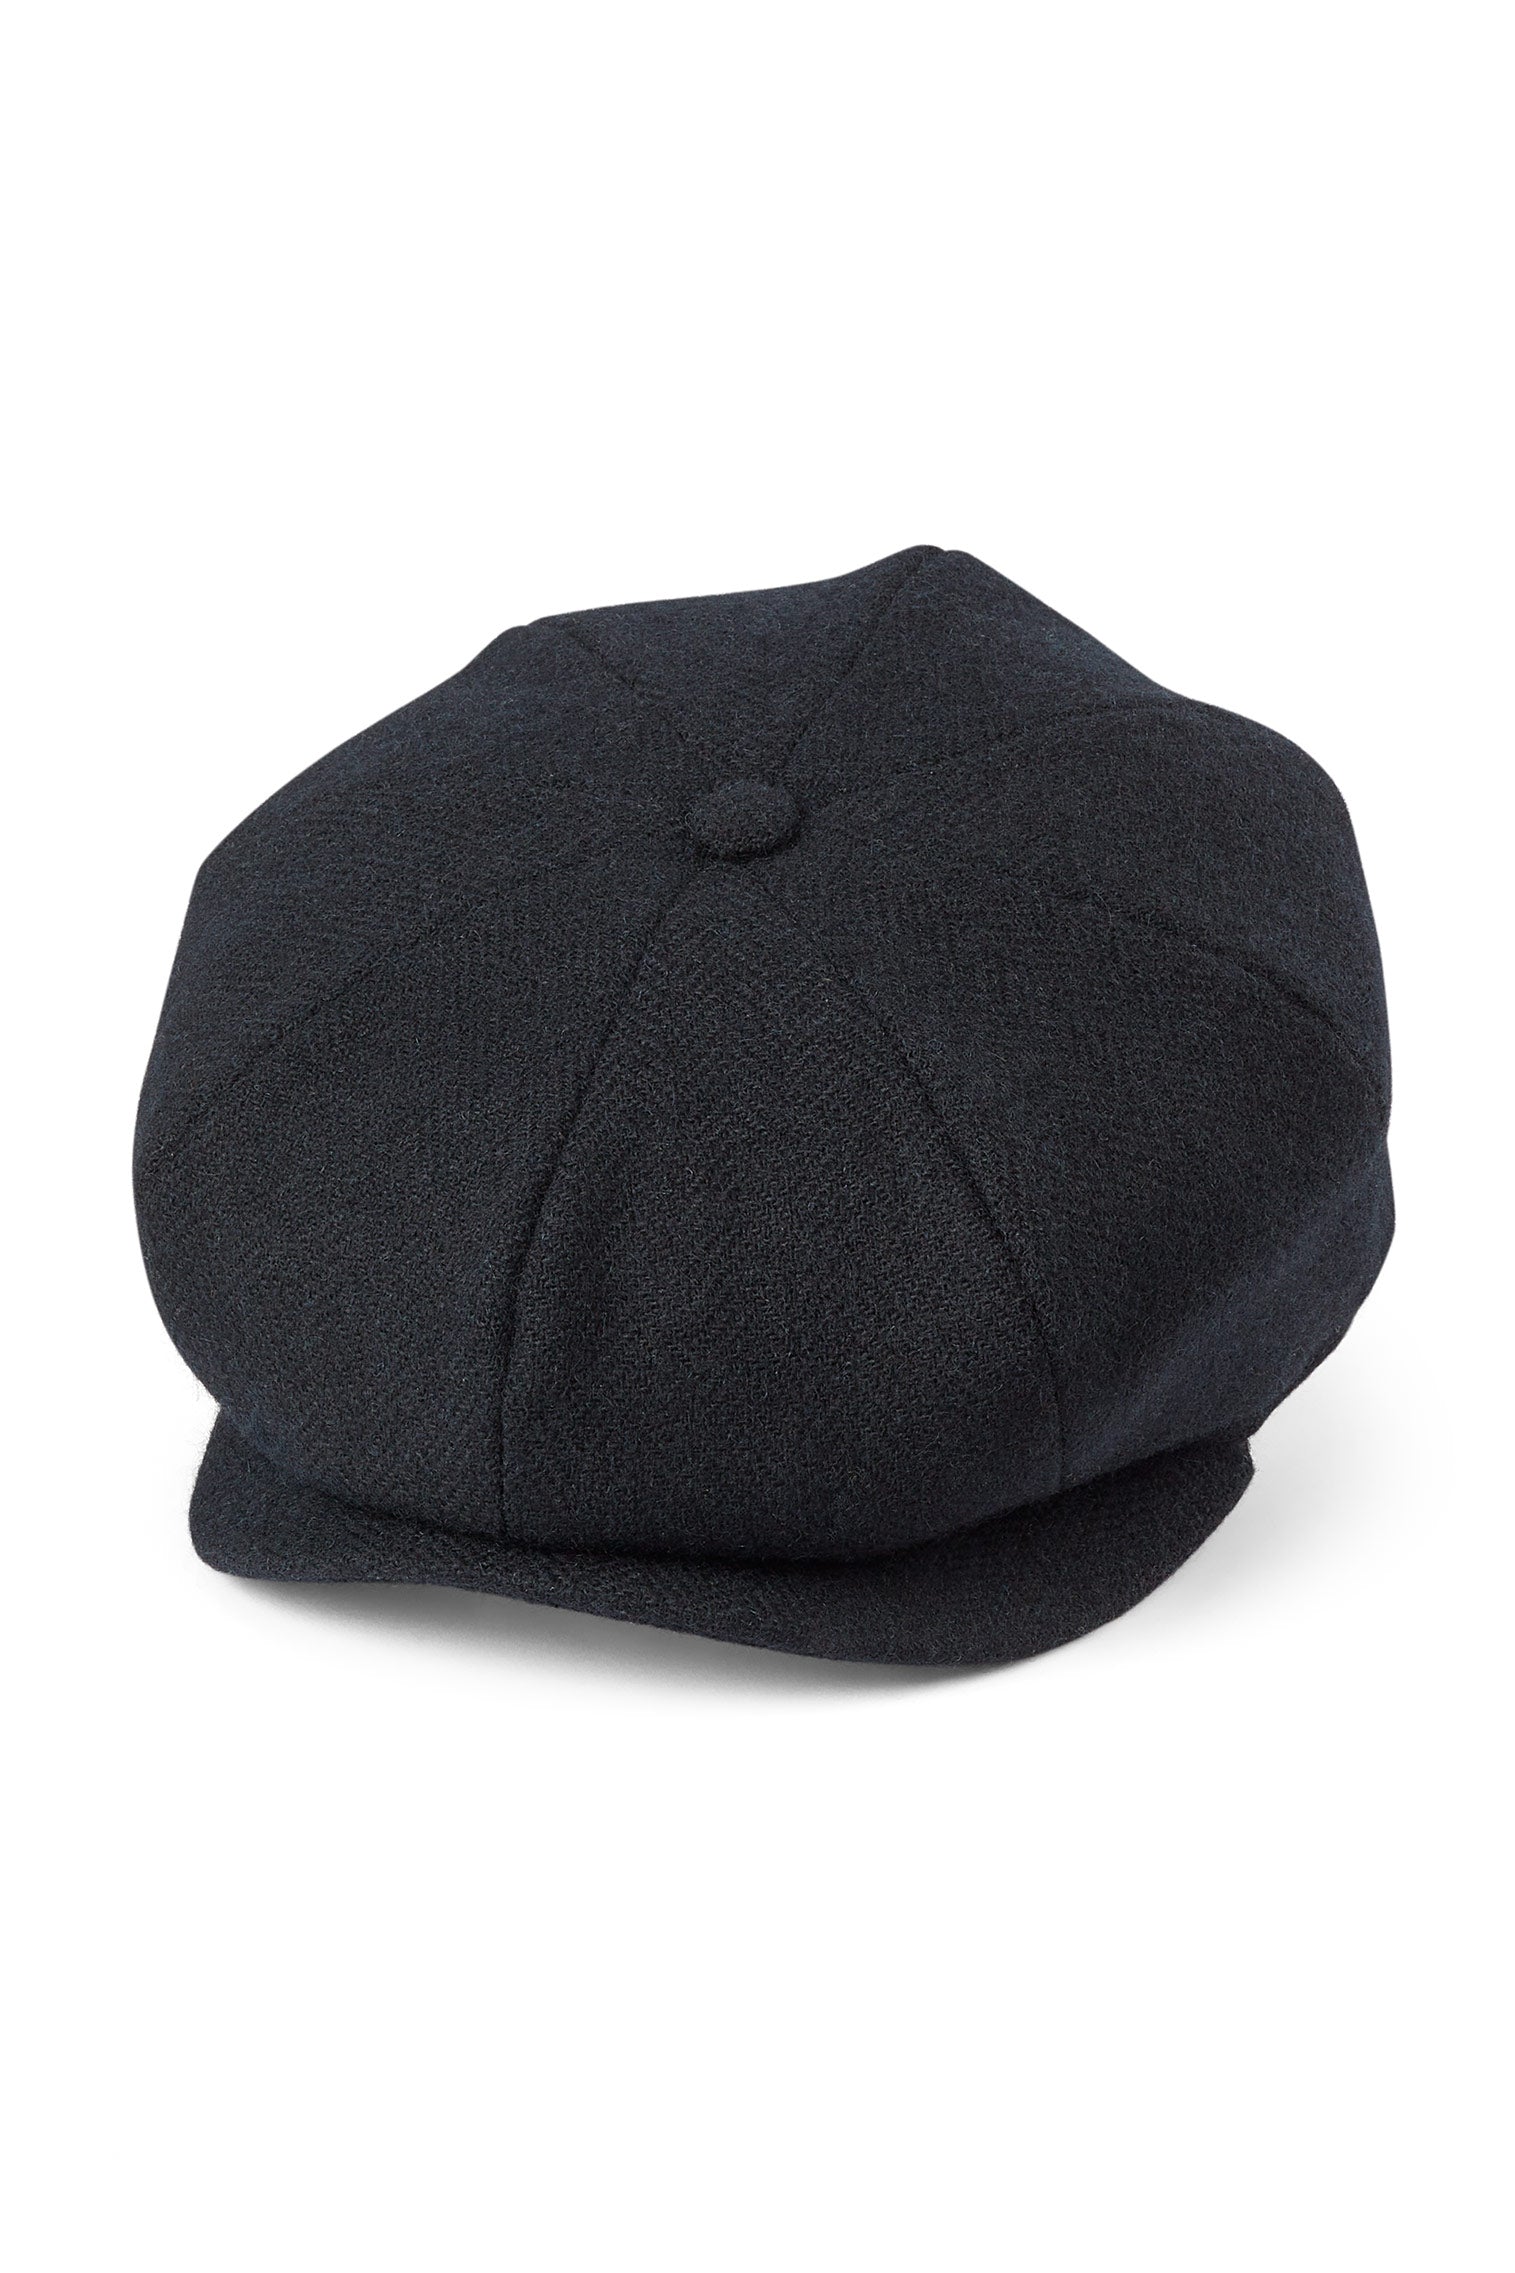 Tremelo Black Bakerboy Cap - All Ready to Wear - Lock & Co. Hatters London UK